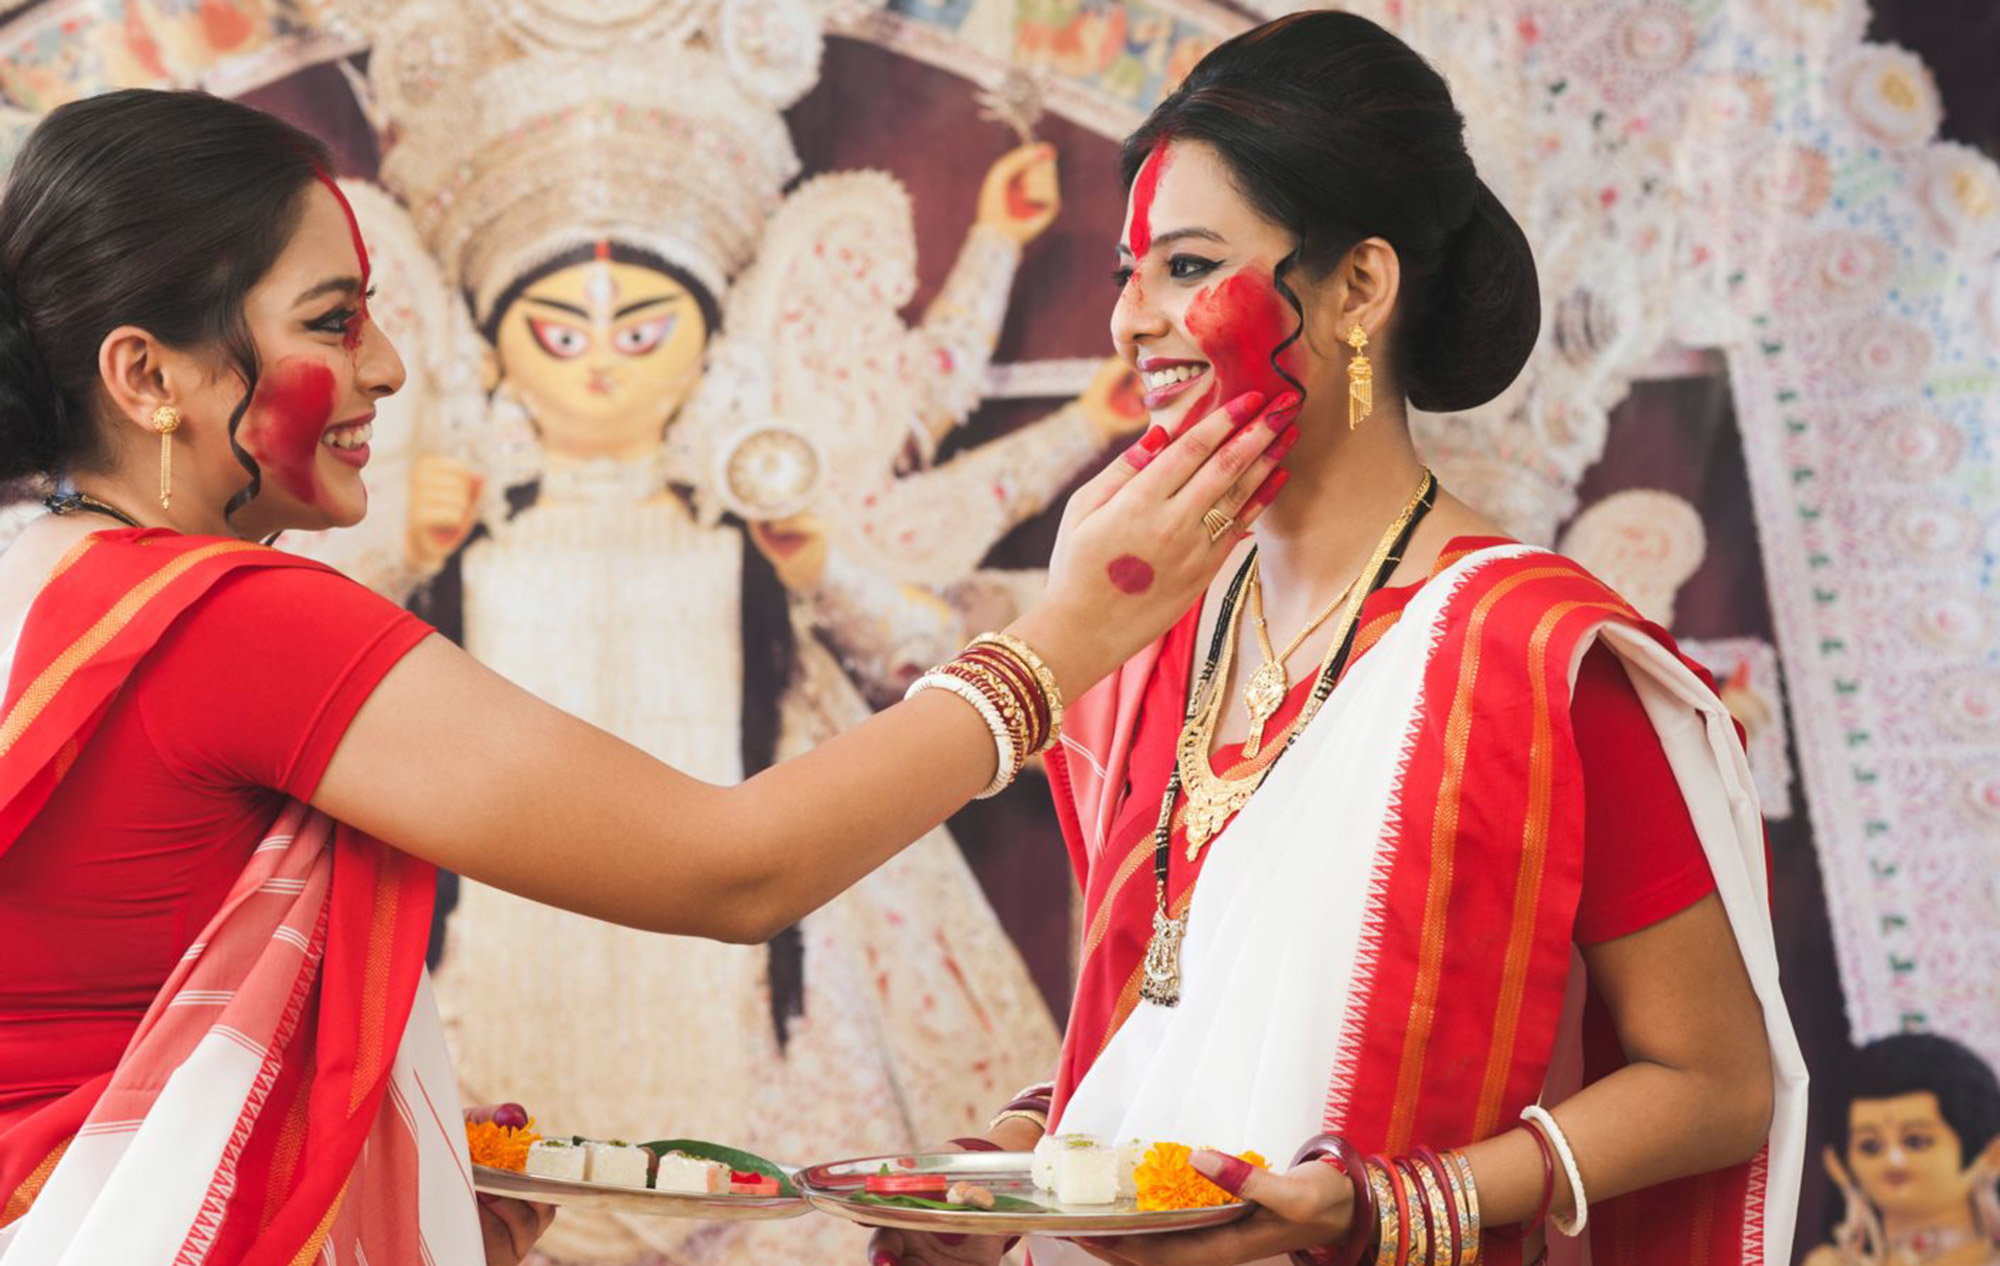 Celebrating Durga Puja Festival in Kolkata